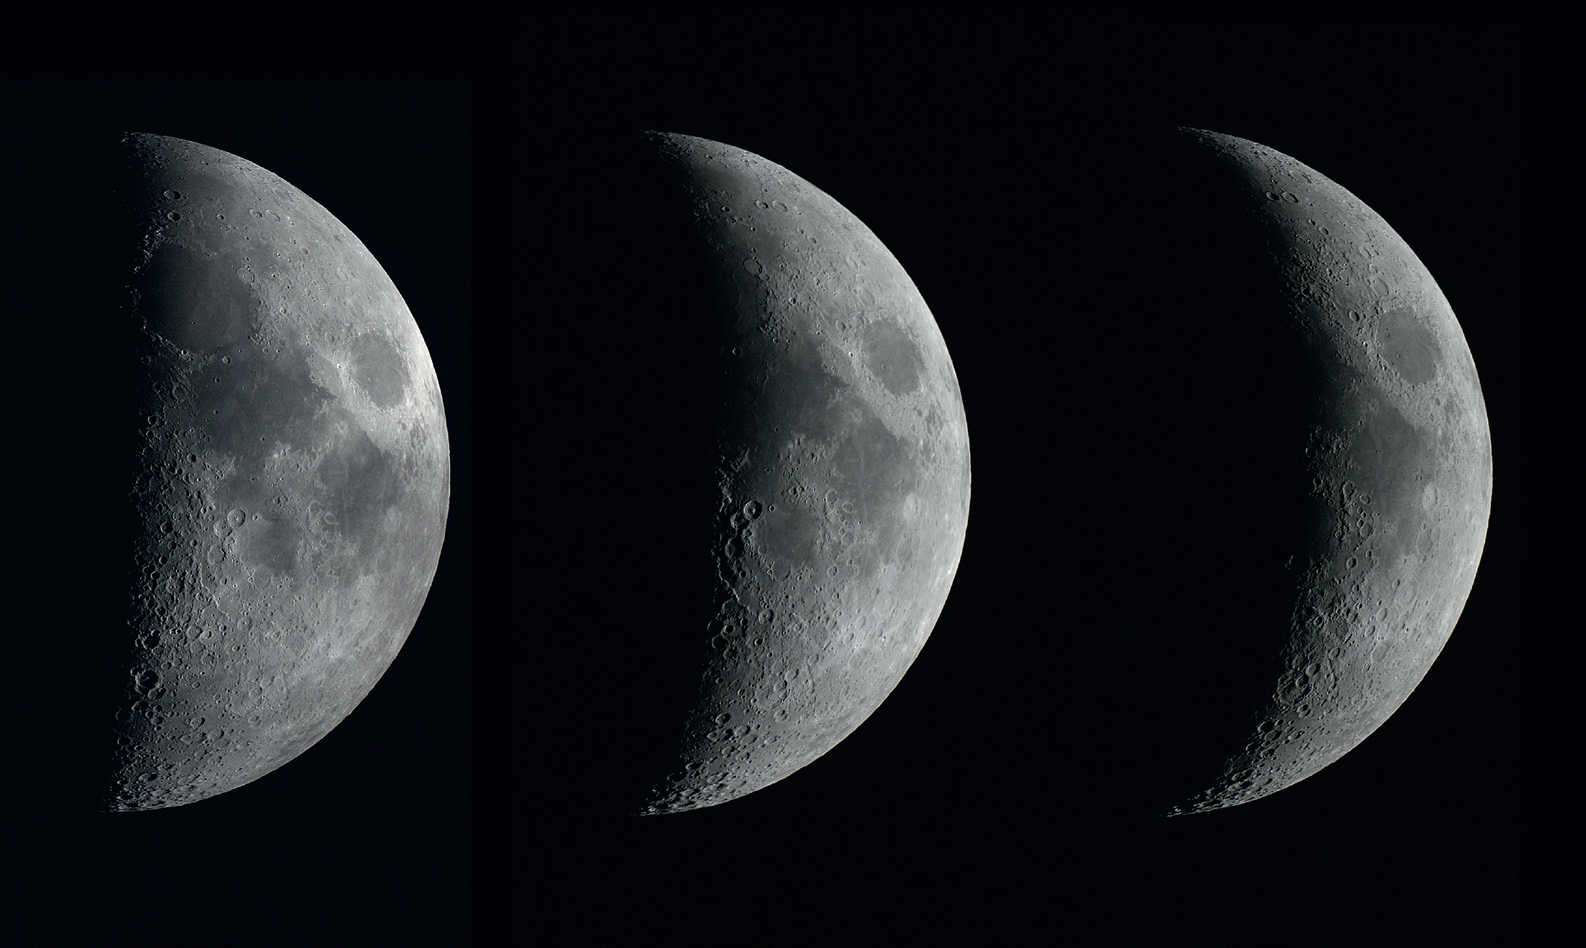 fazy "rosnącego" Księżyca przez trzy kolejne dni. Zdjęcia wykonane lustrzanką cyfrową Canon 450D na refraktorze o aperturze 102mm i ogniskowej 1000mm w odstępach jednodniowych. U. Dittler